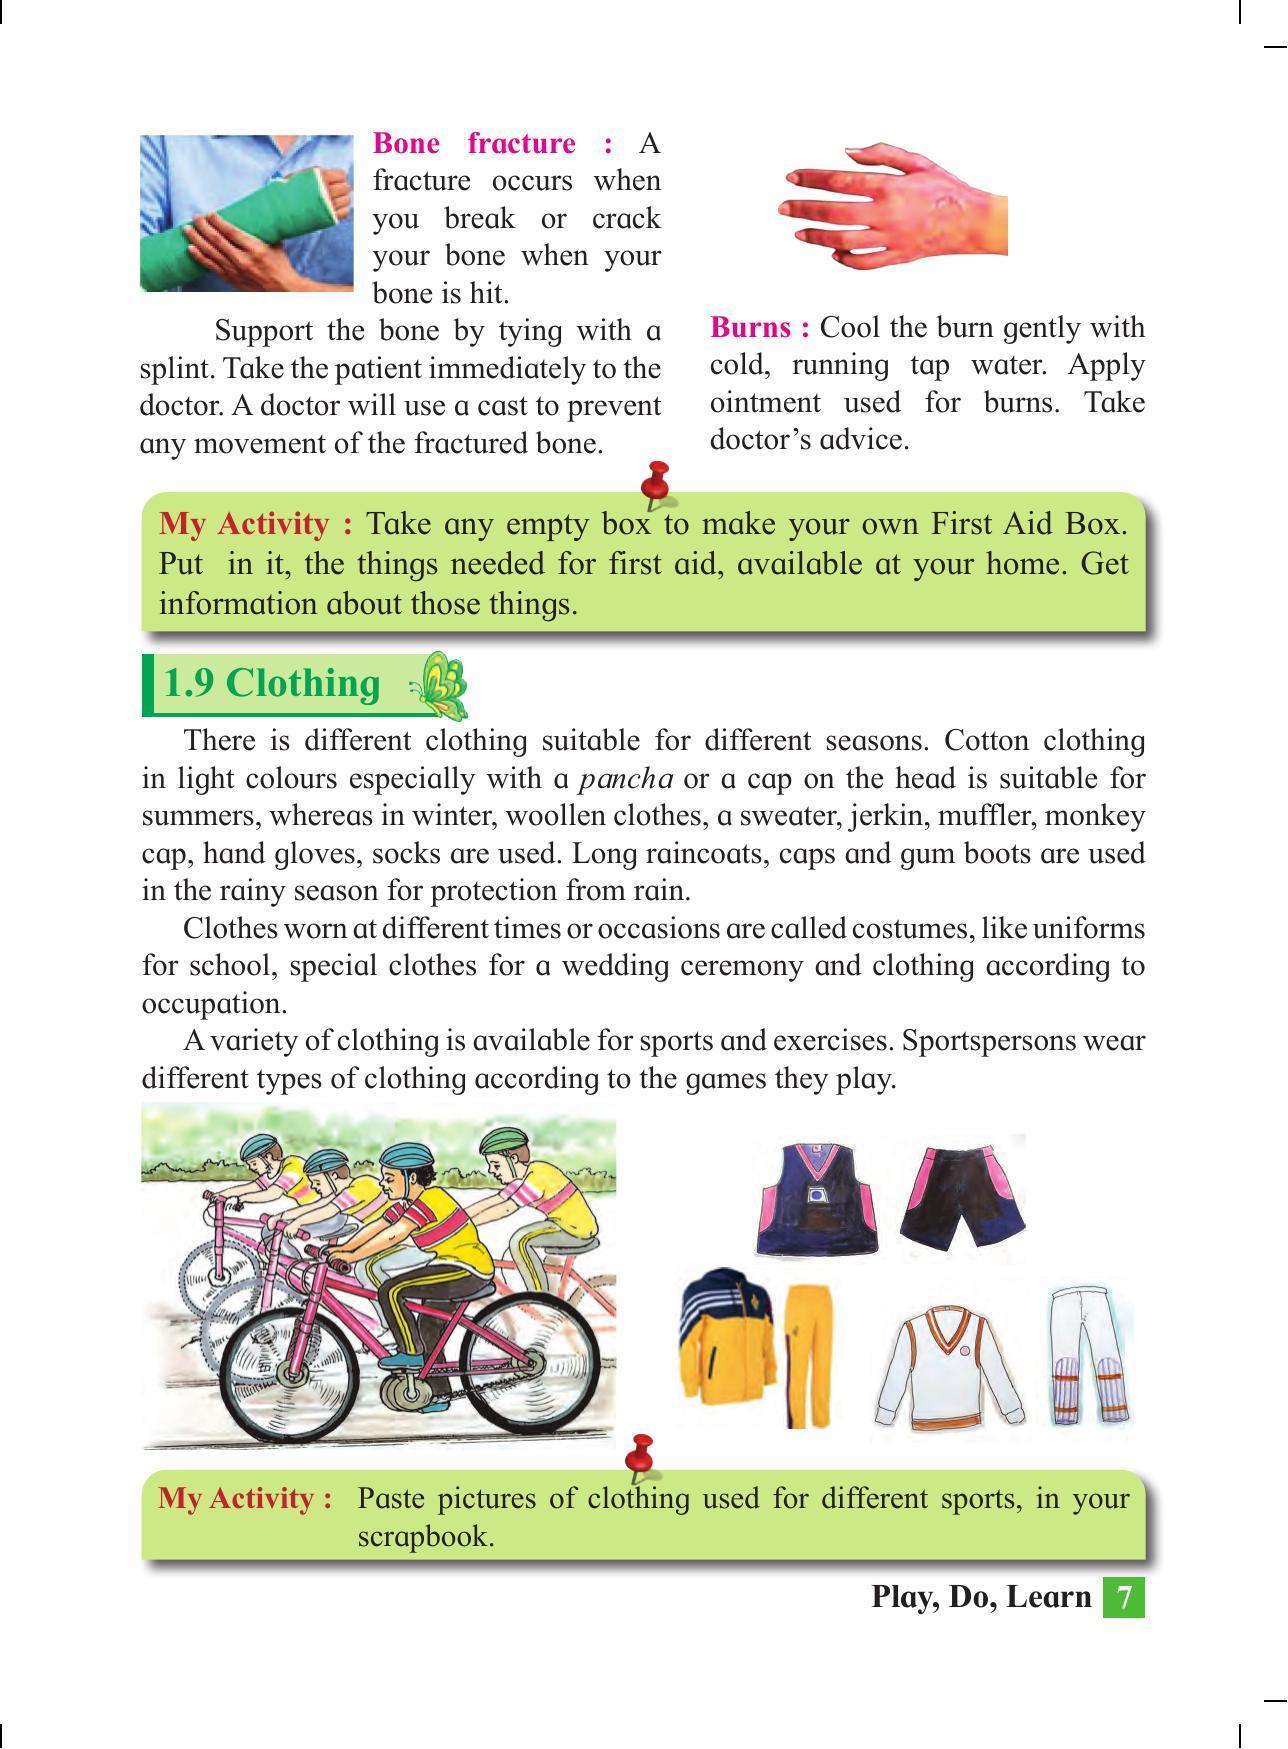 Maharashtra Board Class 4 Play Do Learn (English Medium) Textbook - Page 16